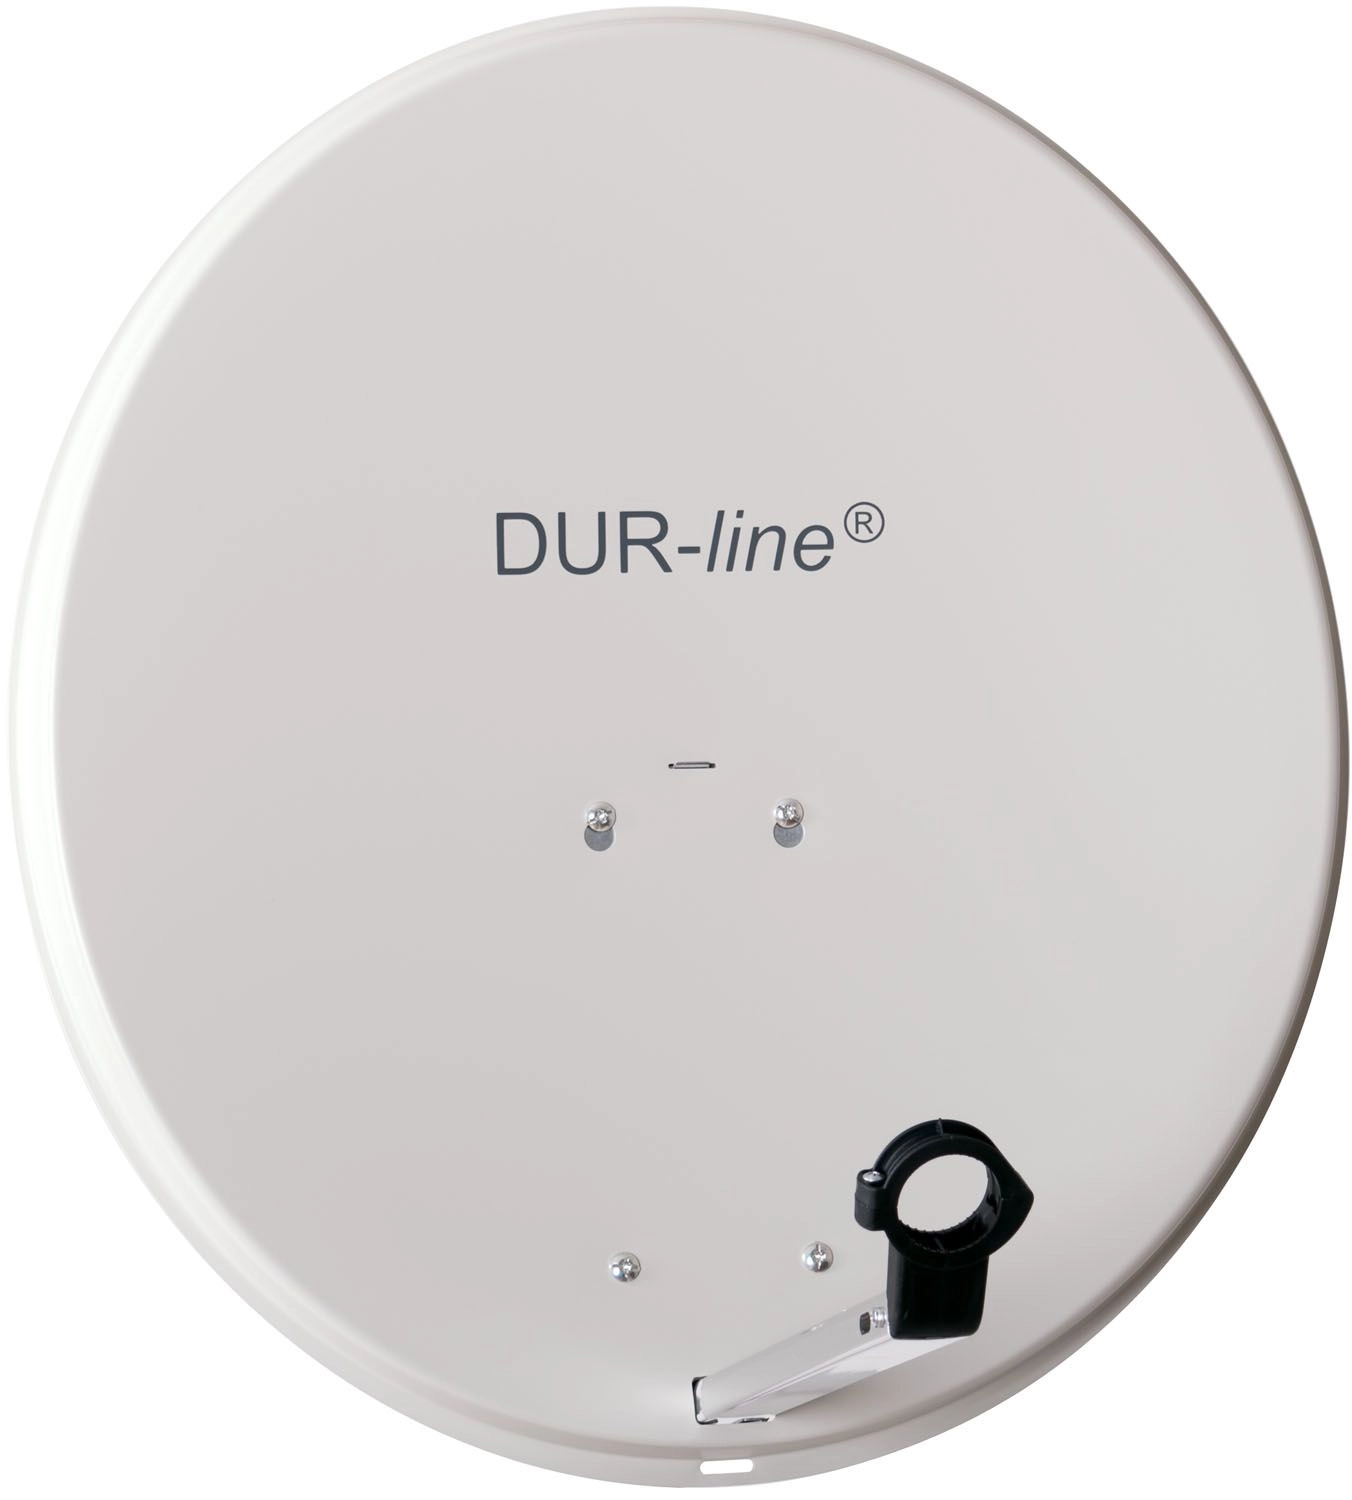 DUR-line MDA 60 Hellgrau - Alu Sat-Antenne